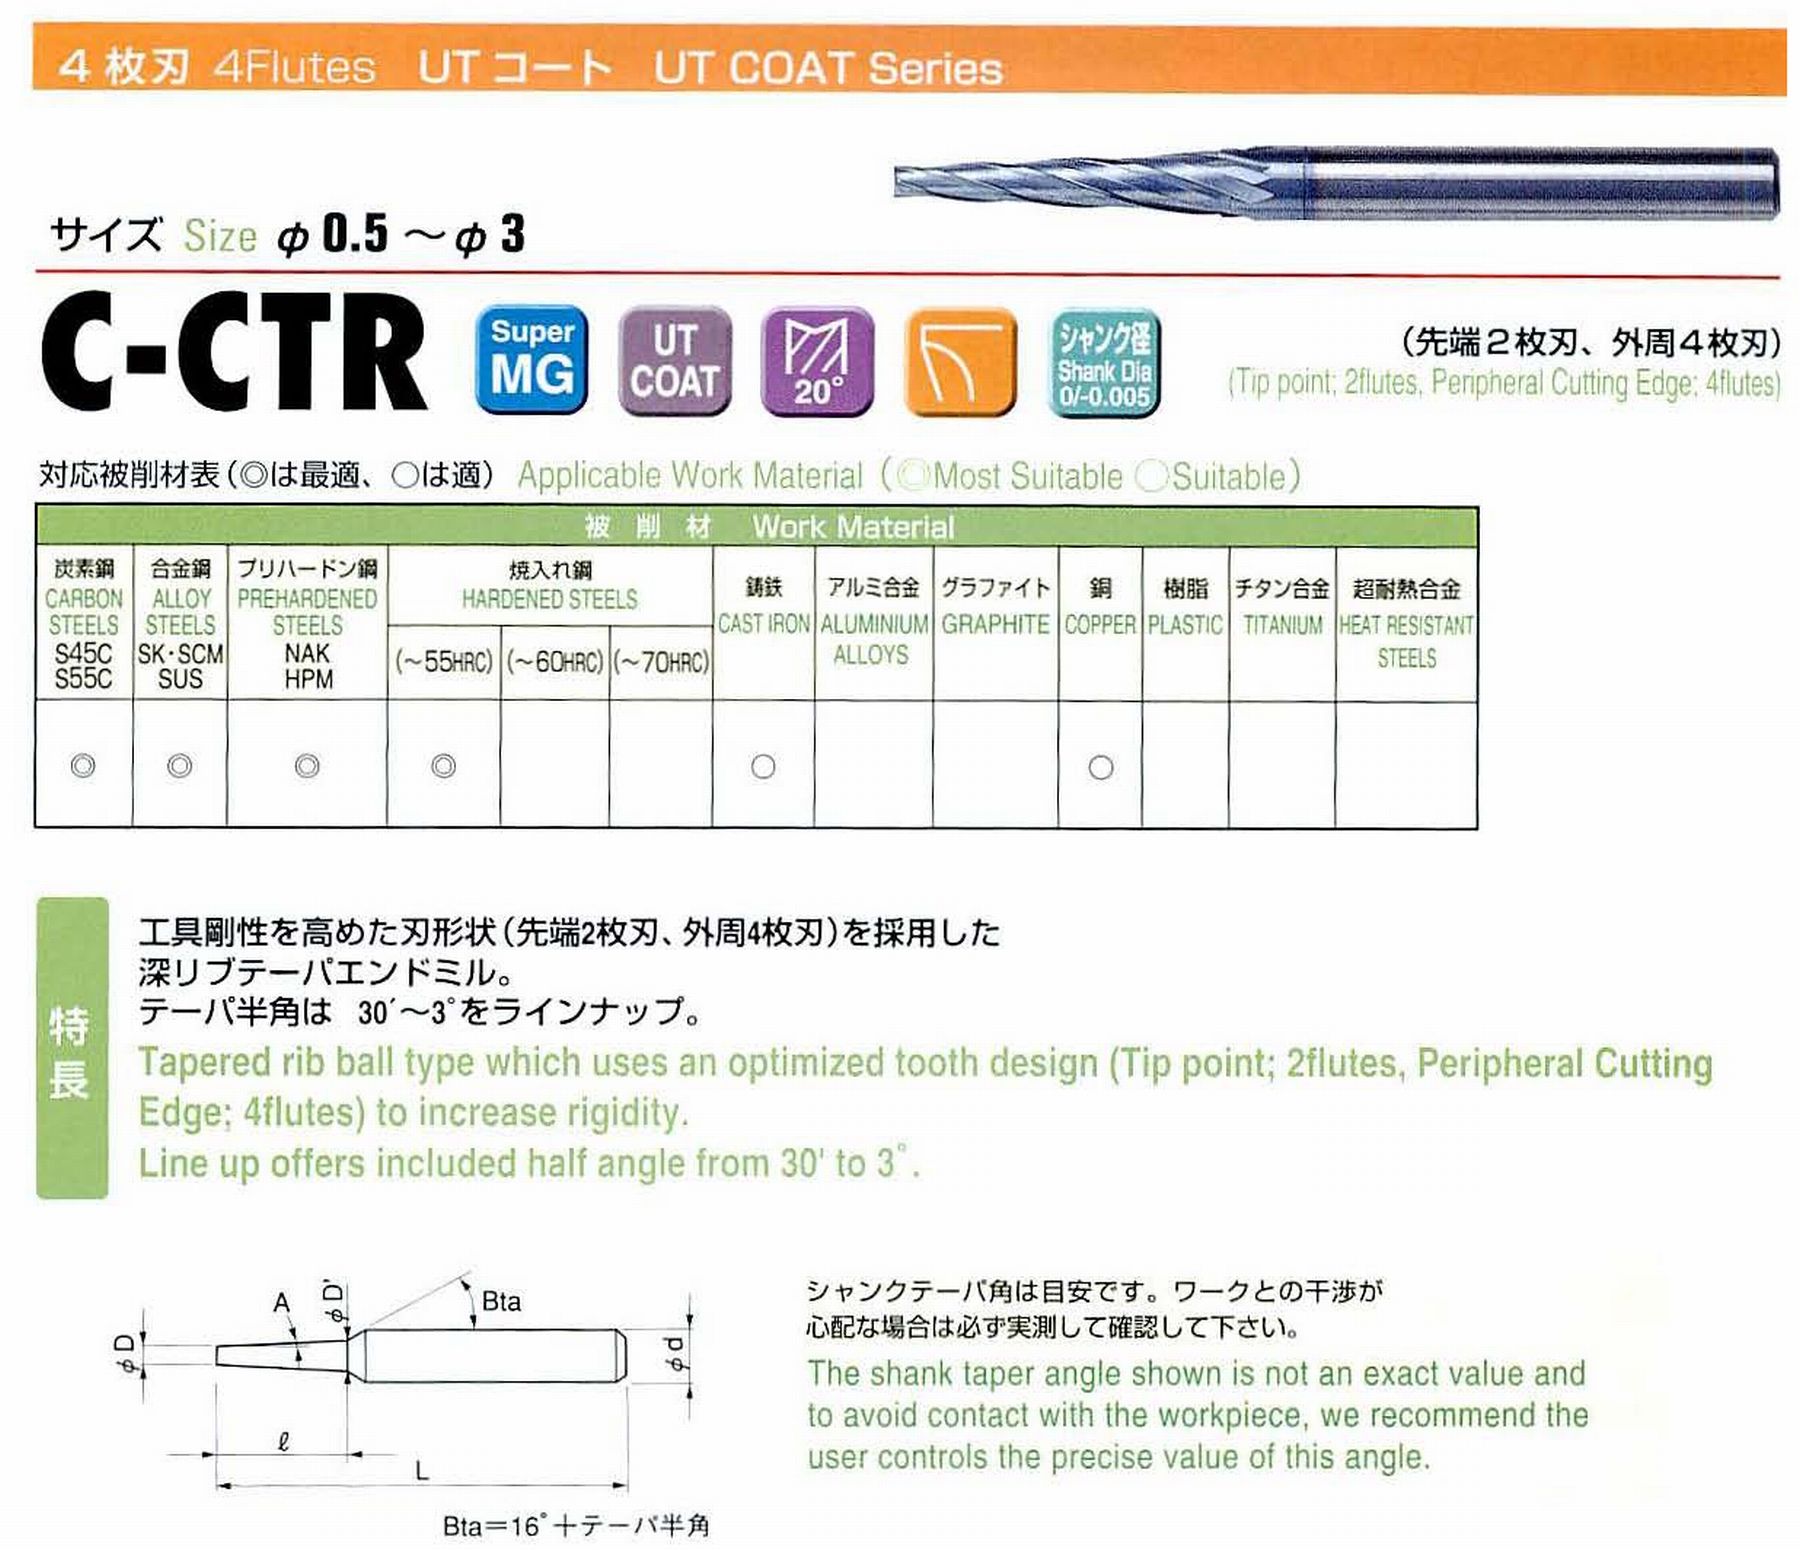 ユニオンツール 4枚刃 C-CTR4016-10-4 先端径1.6 テーパ半角2° 刃長10 大端径2.30 全長45 シャンク径4